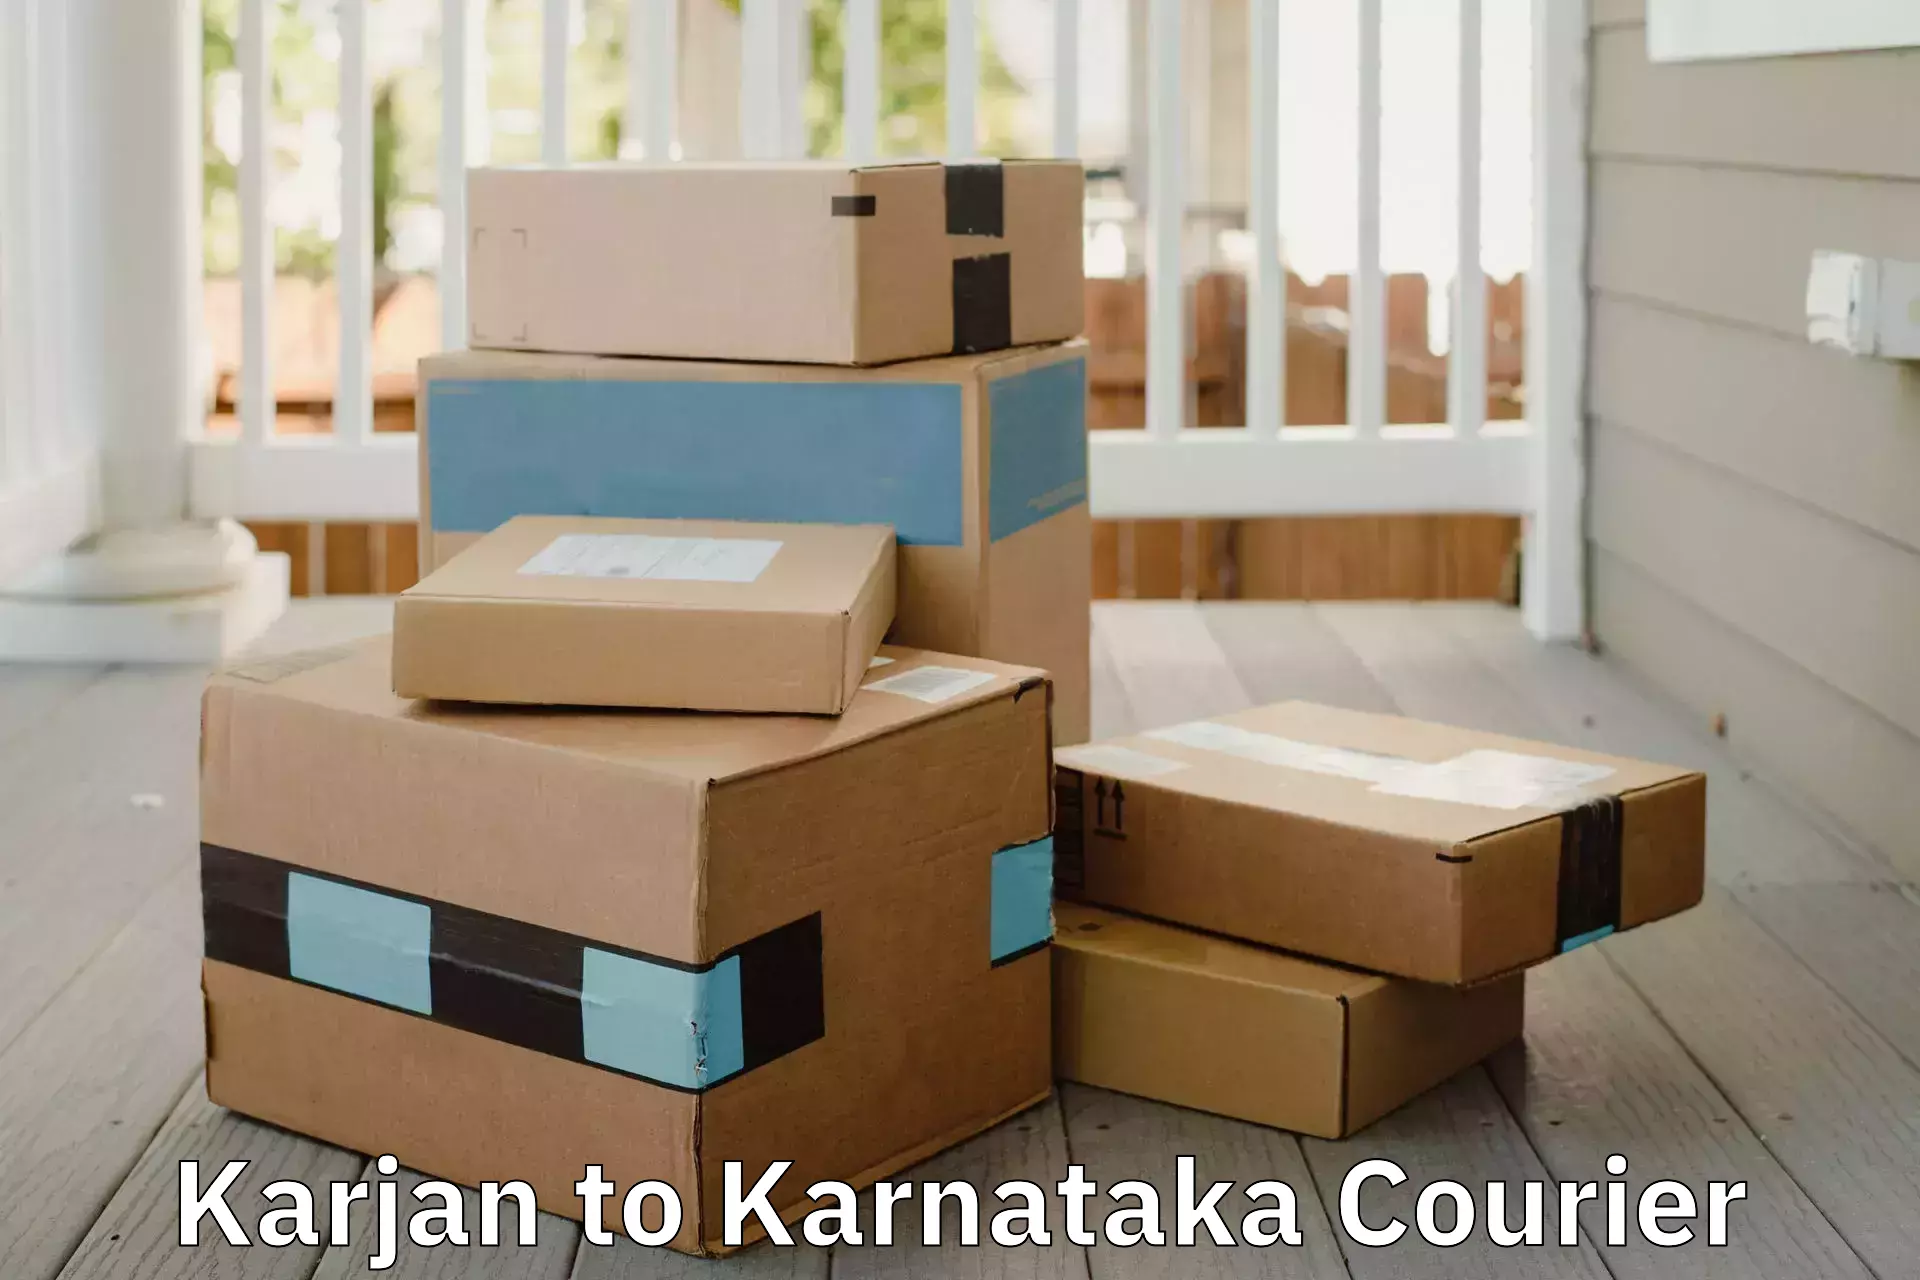 Quality moving and storage Karjan to Karnataka